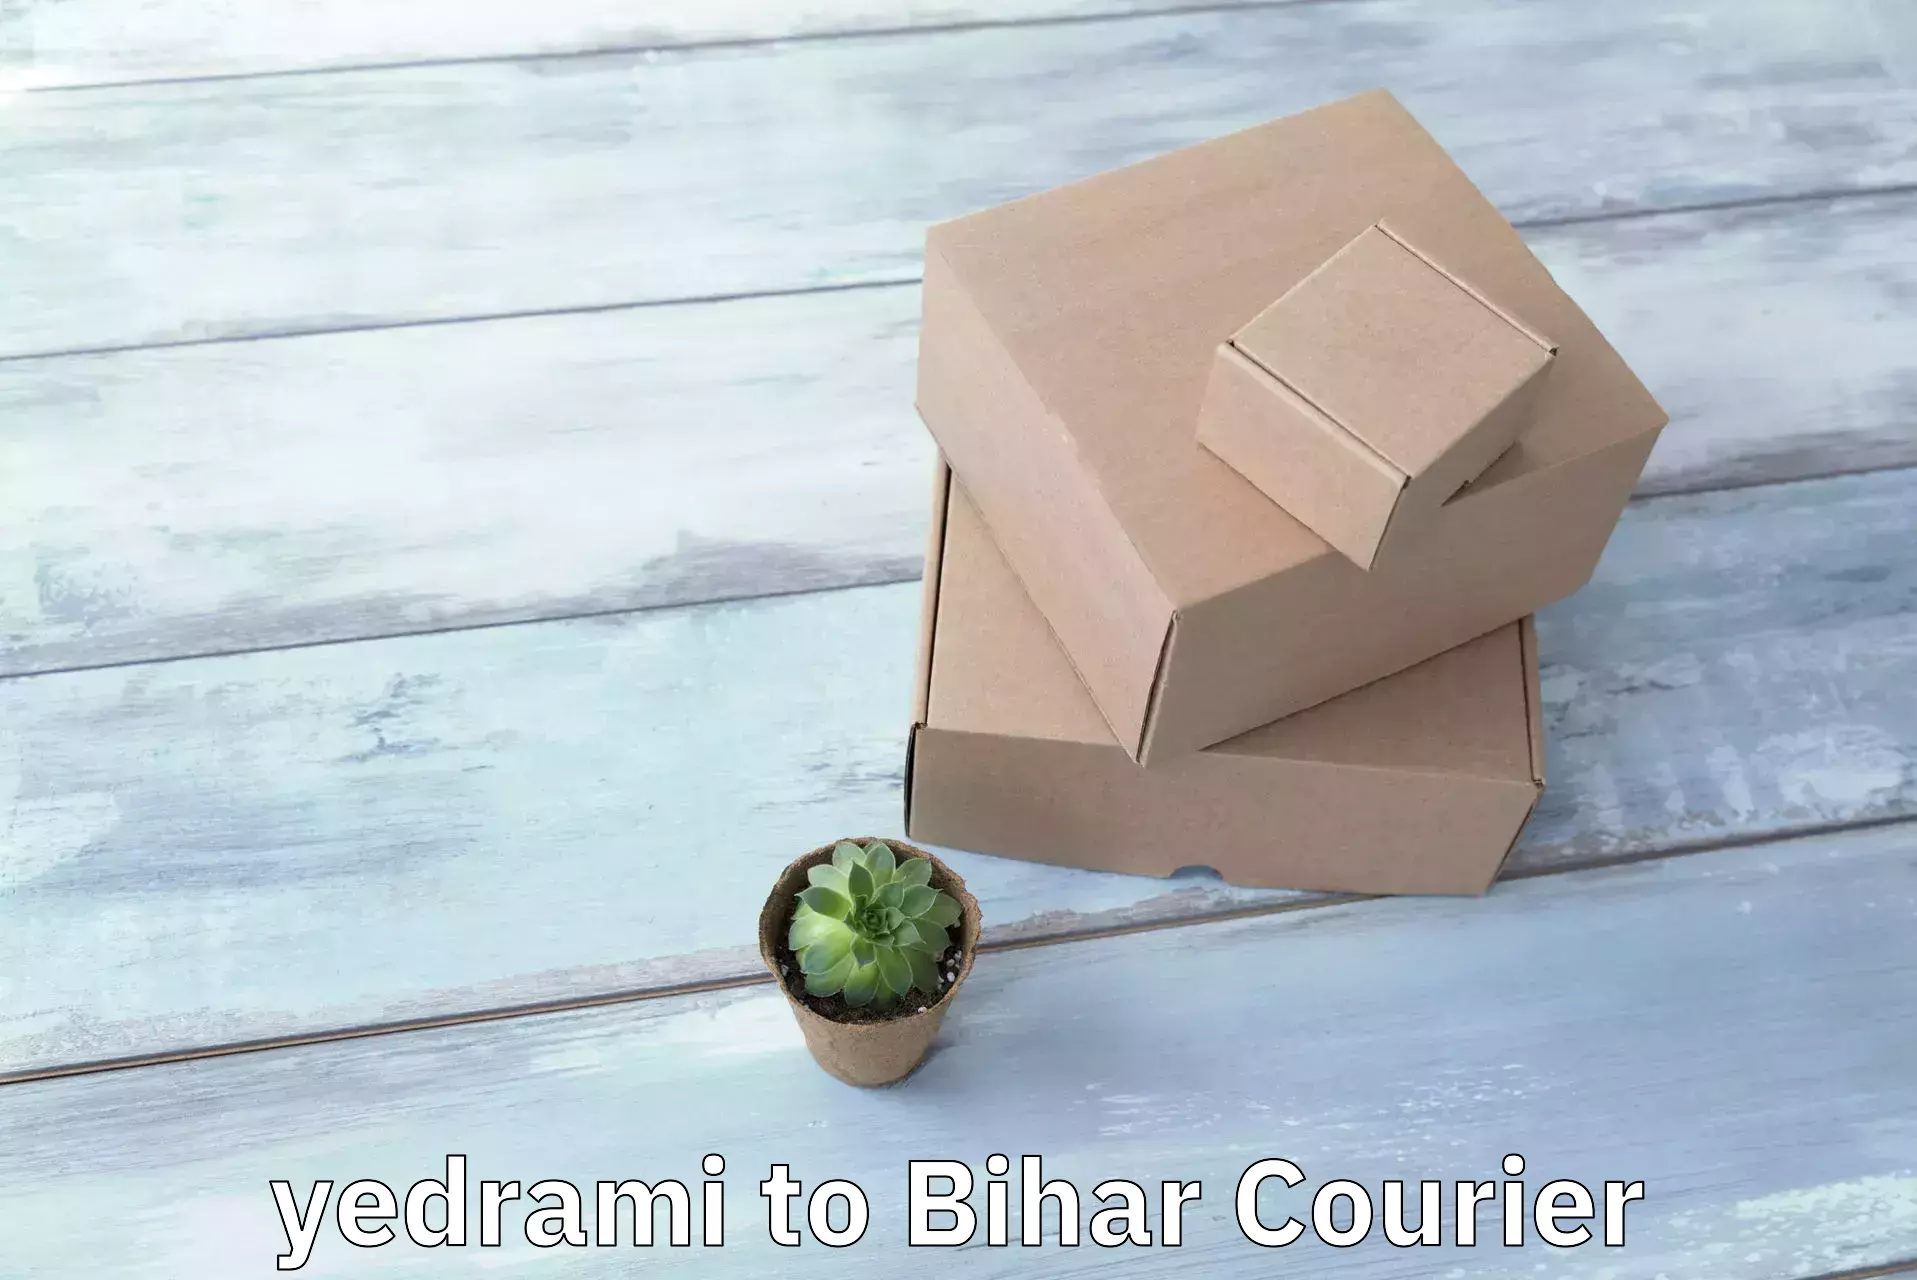 Efficient parcel service yedrami to Bihar